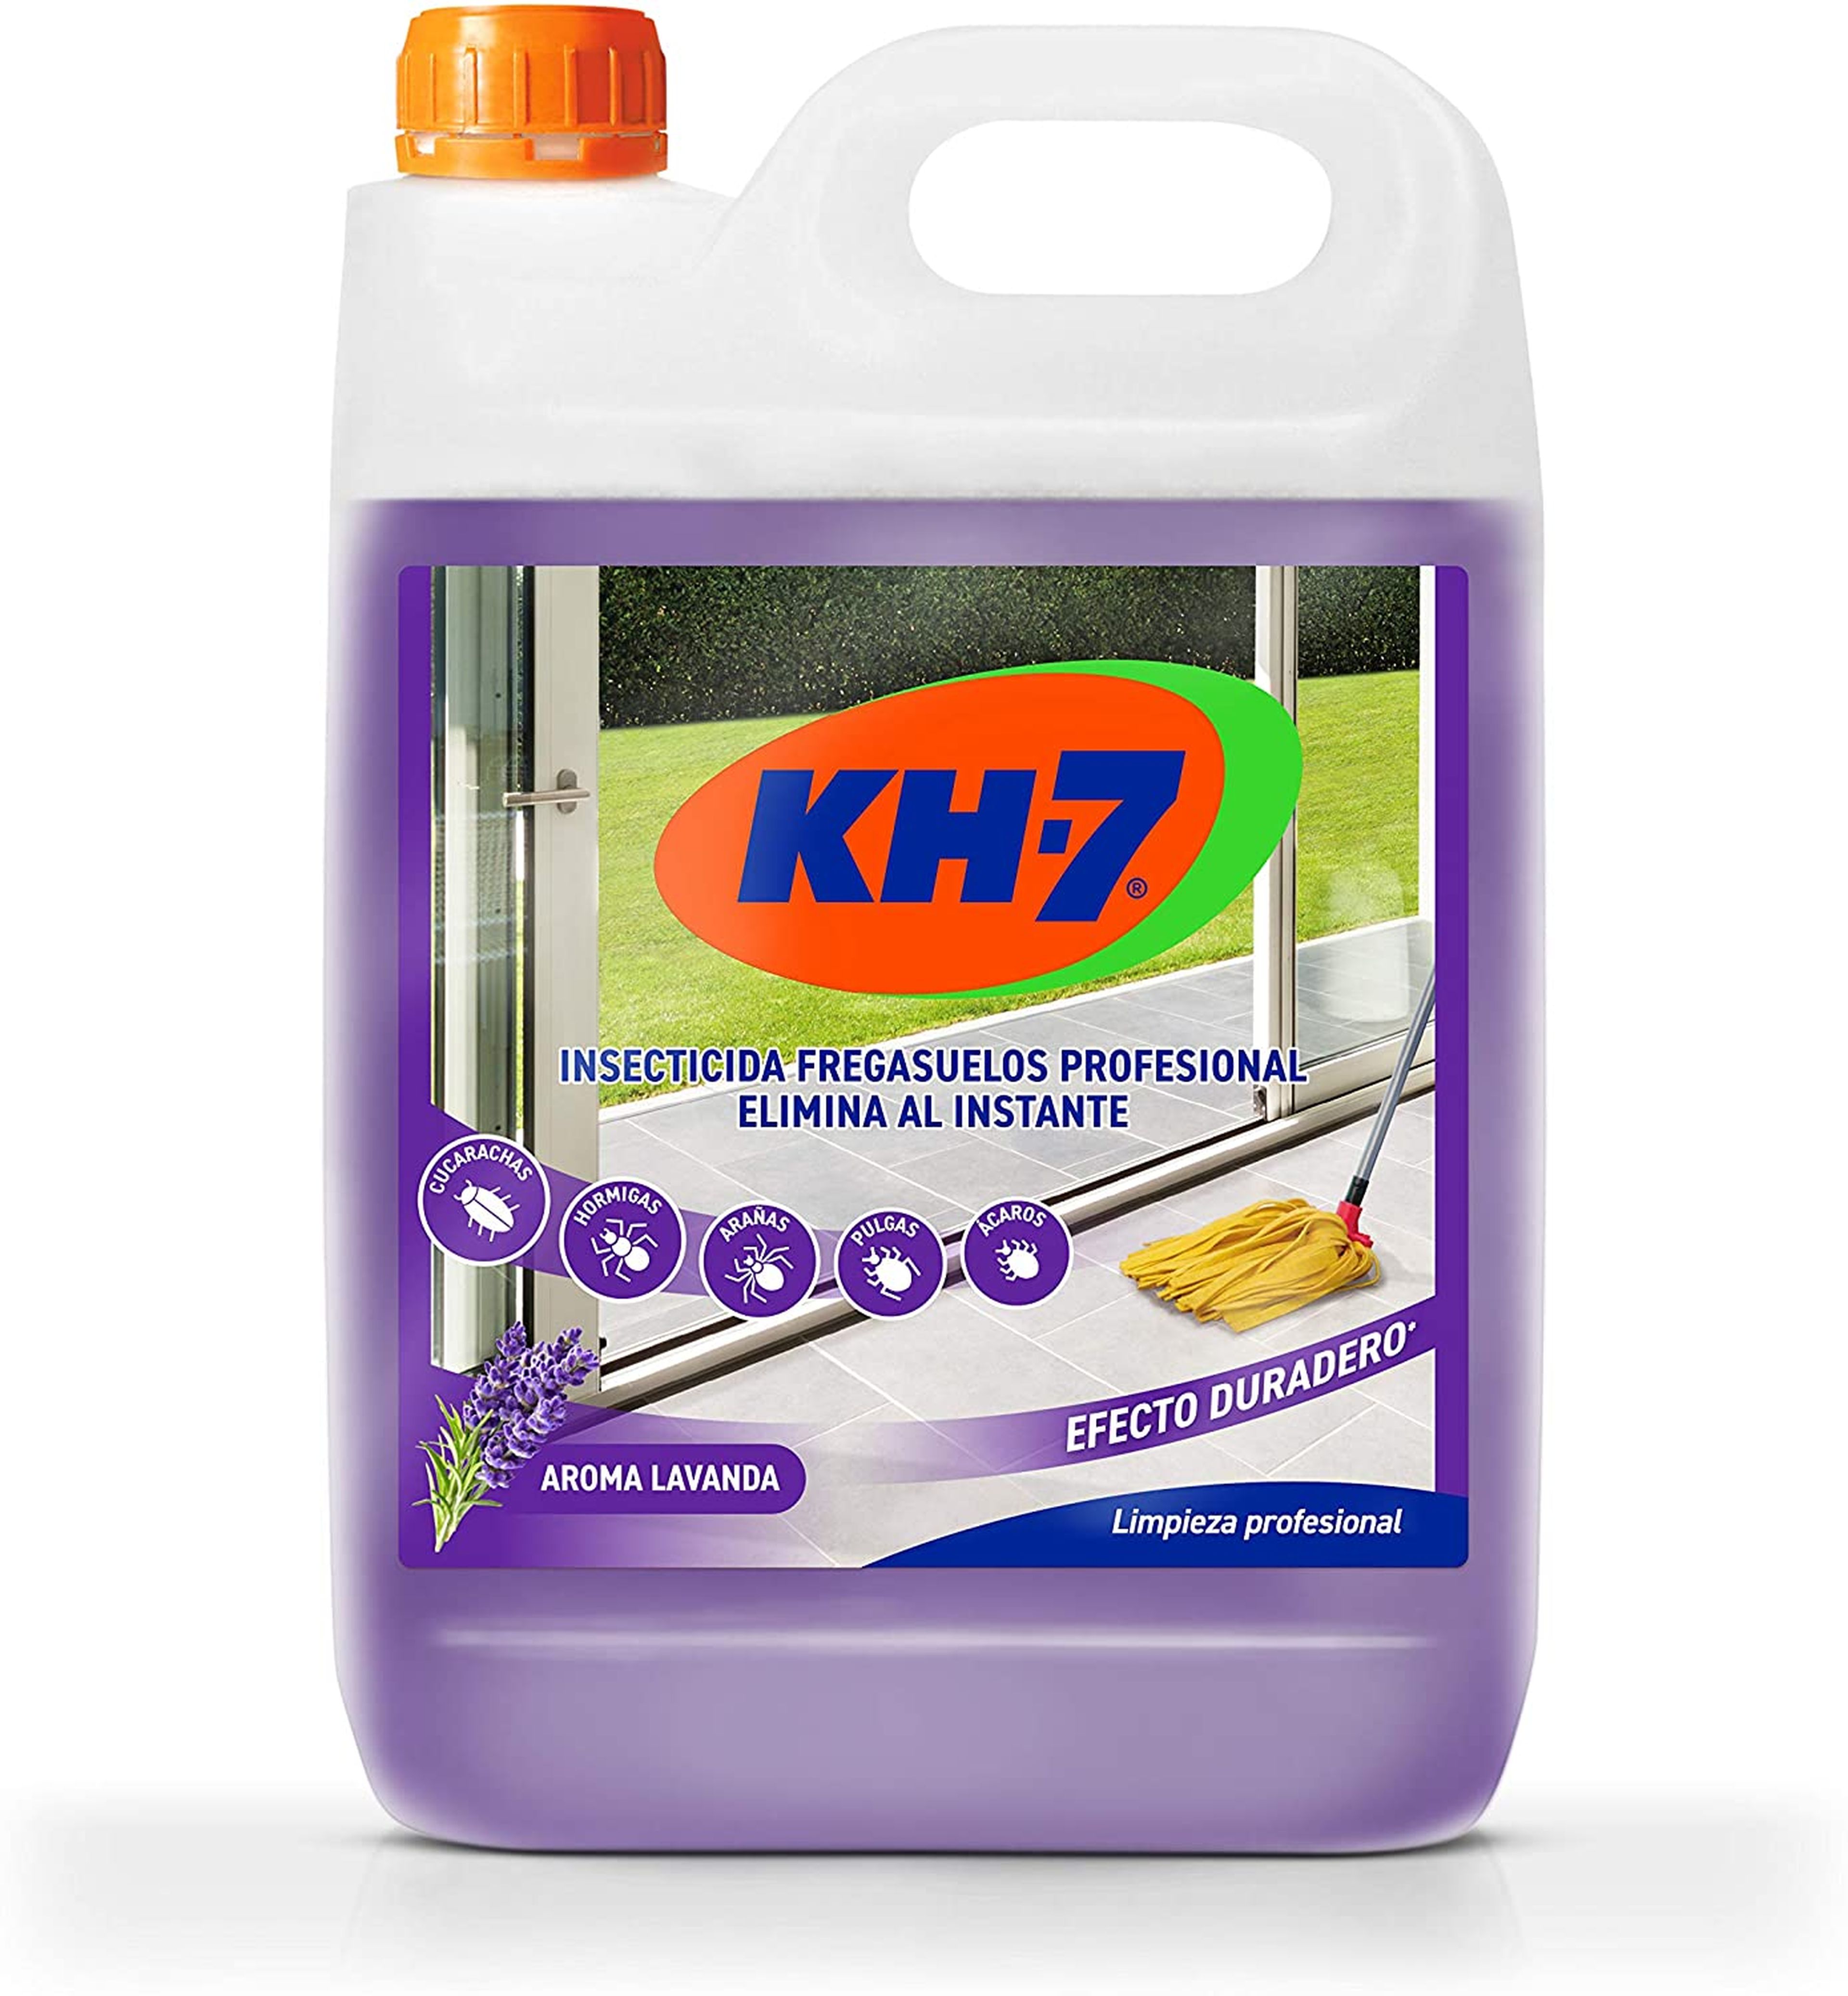 Friegasuelos insecticida KH7